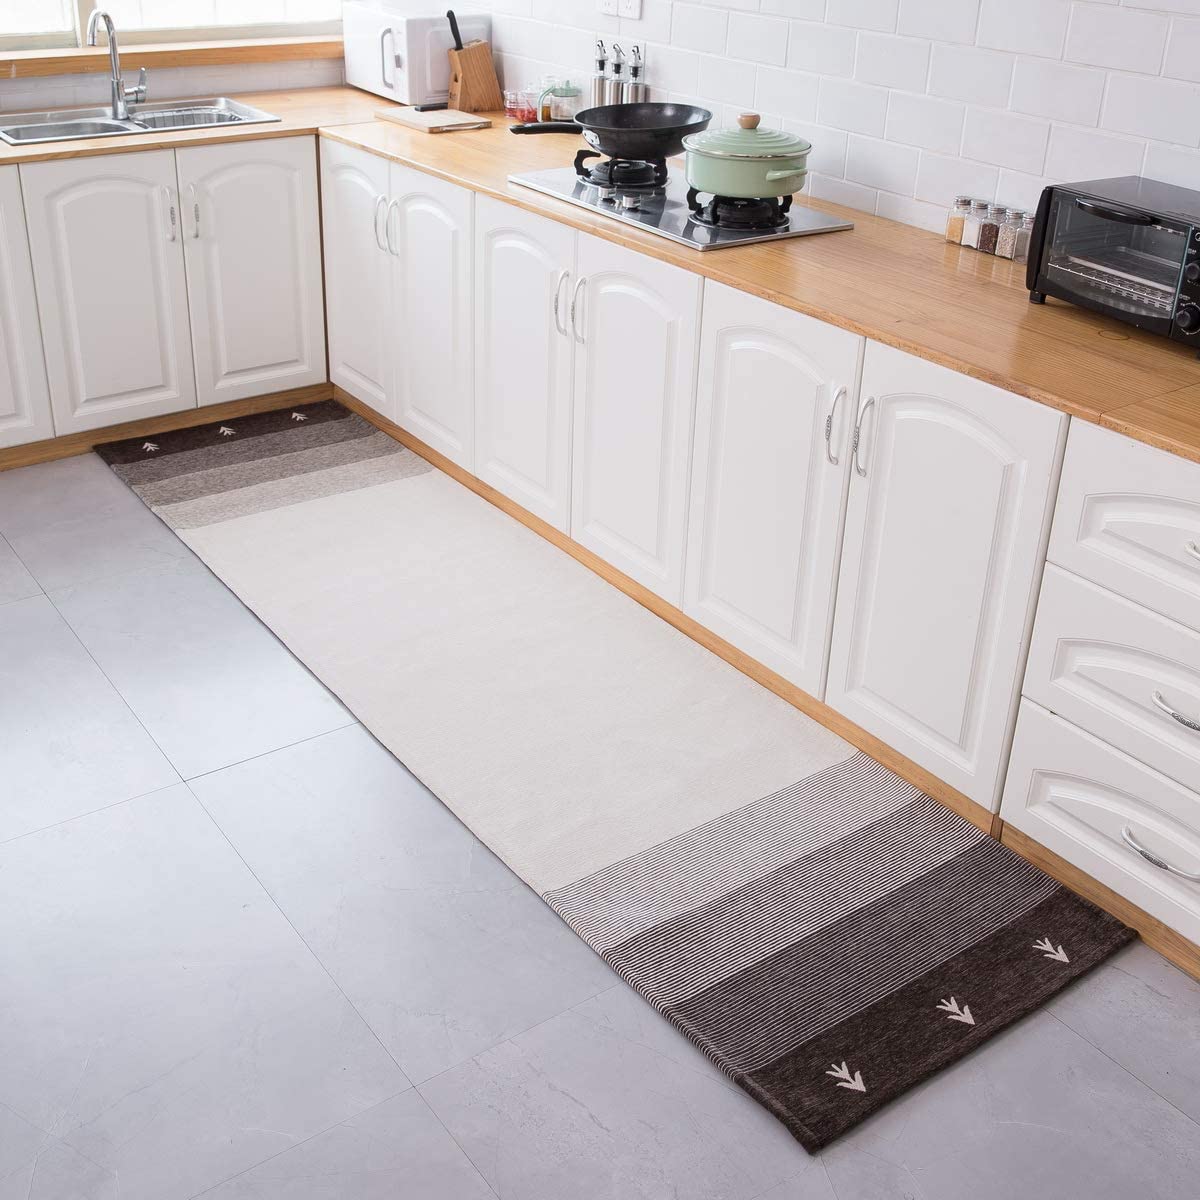 grey kitchen rug